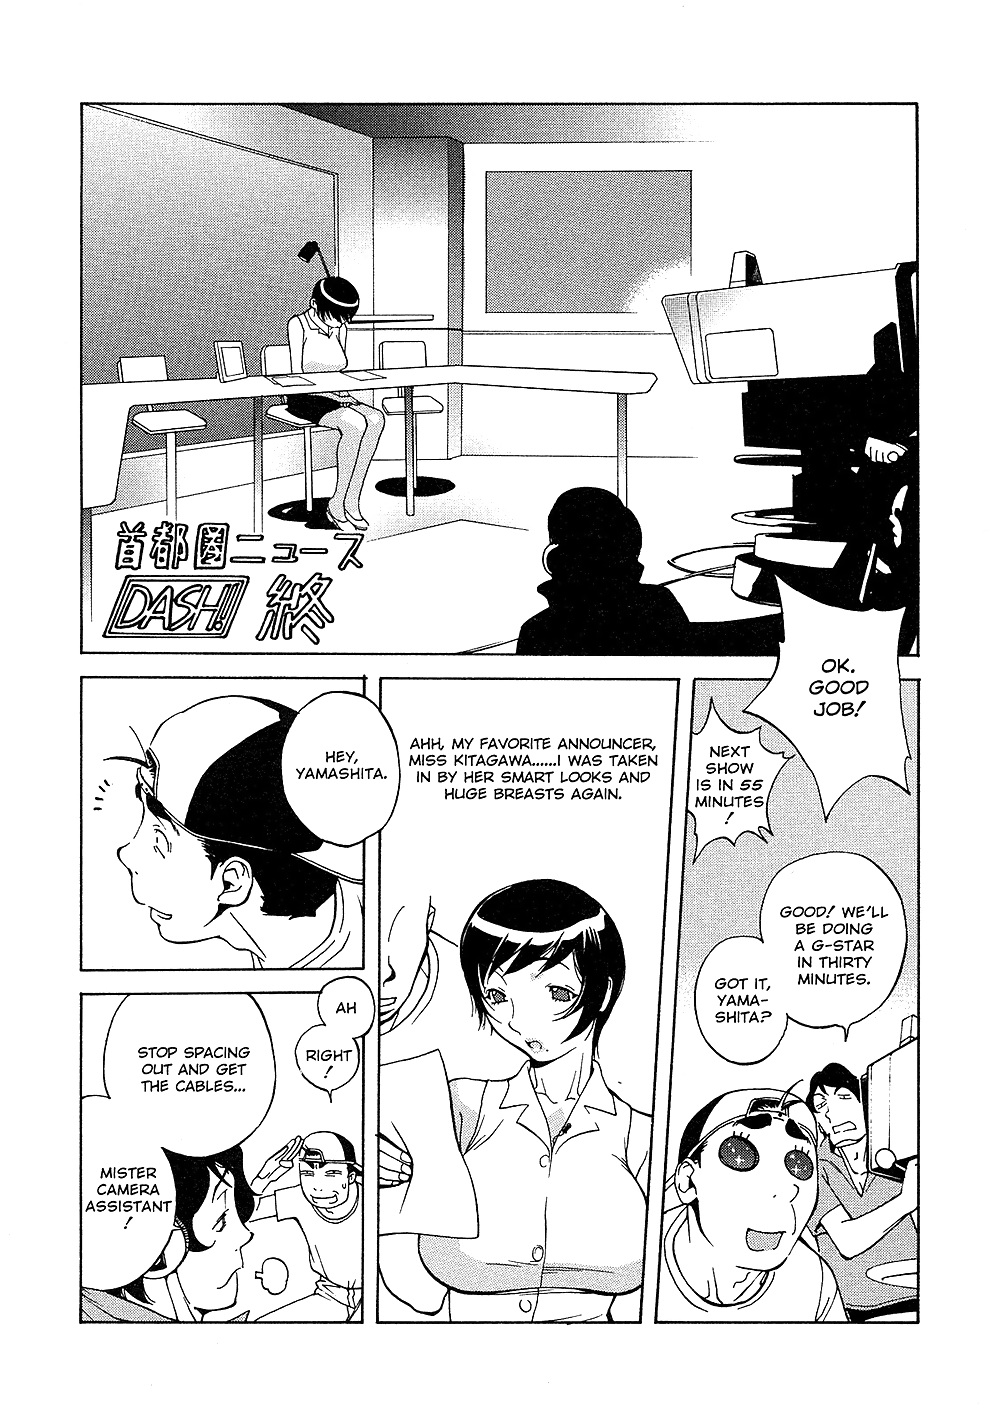 (comic hentai) yumisuke kotoyoshi erotic works #2
 #21623634